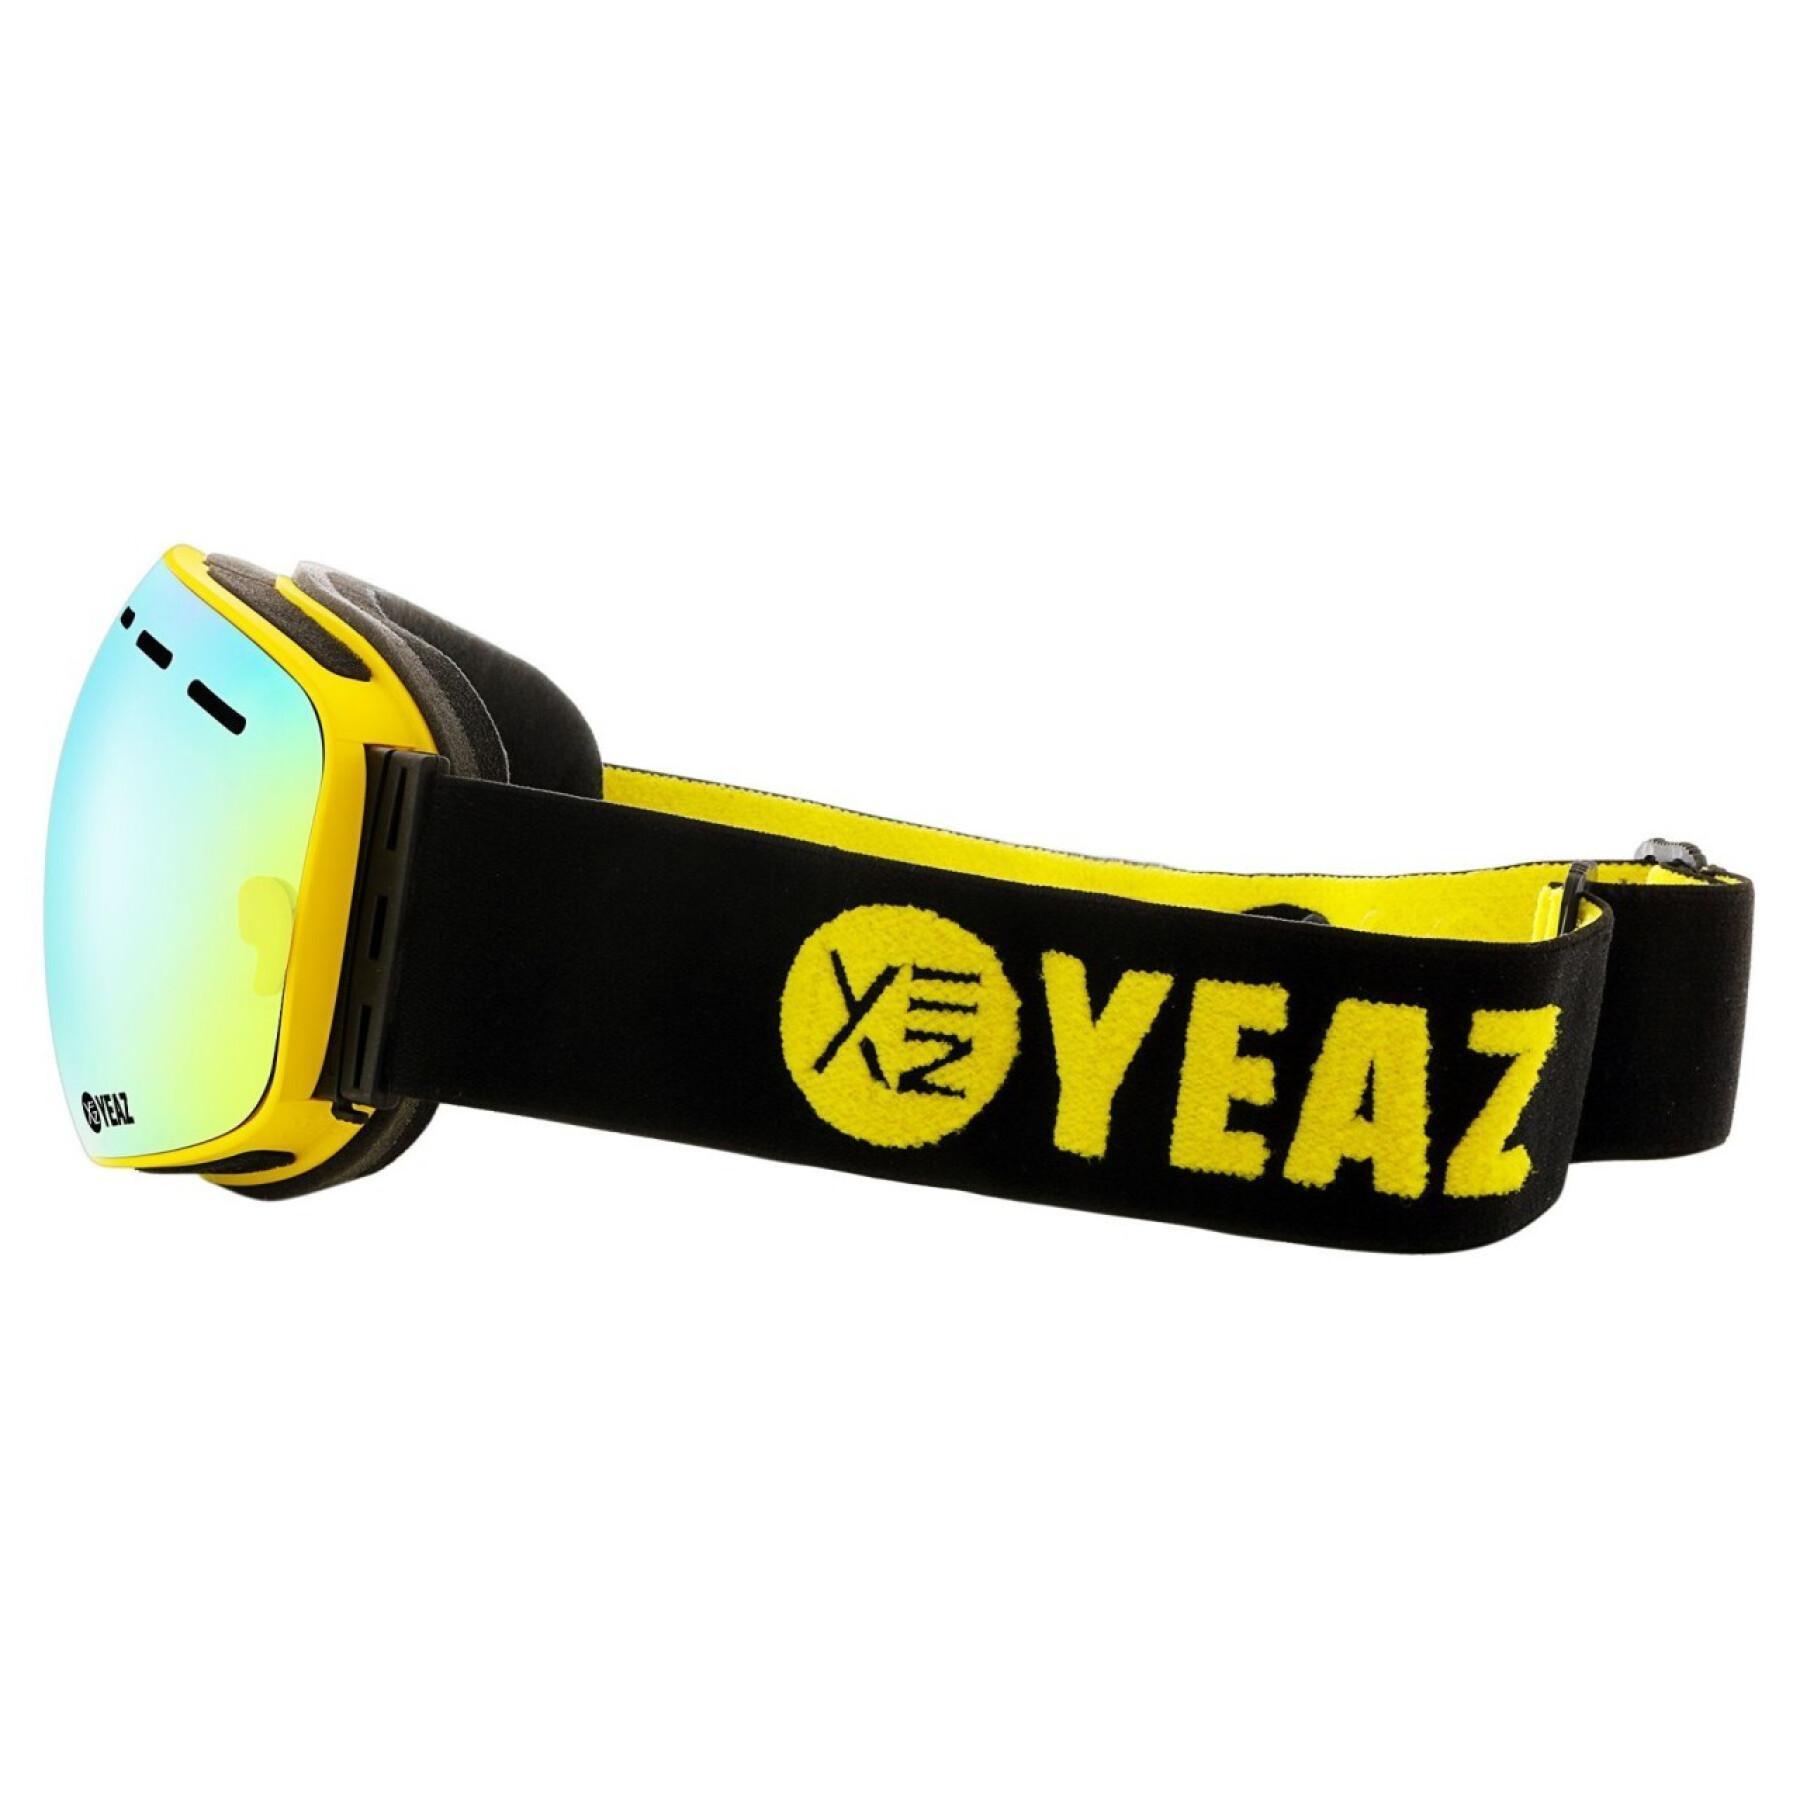 Máscara de esquí y snowboard con montura Yeaz Summit